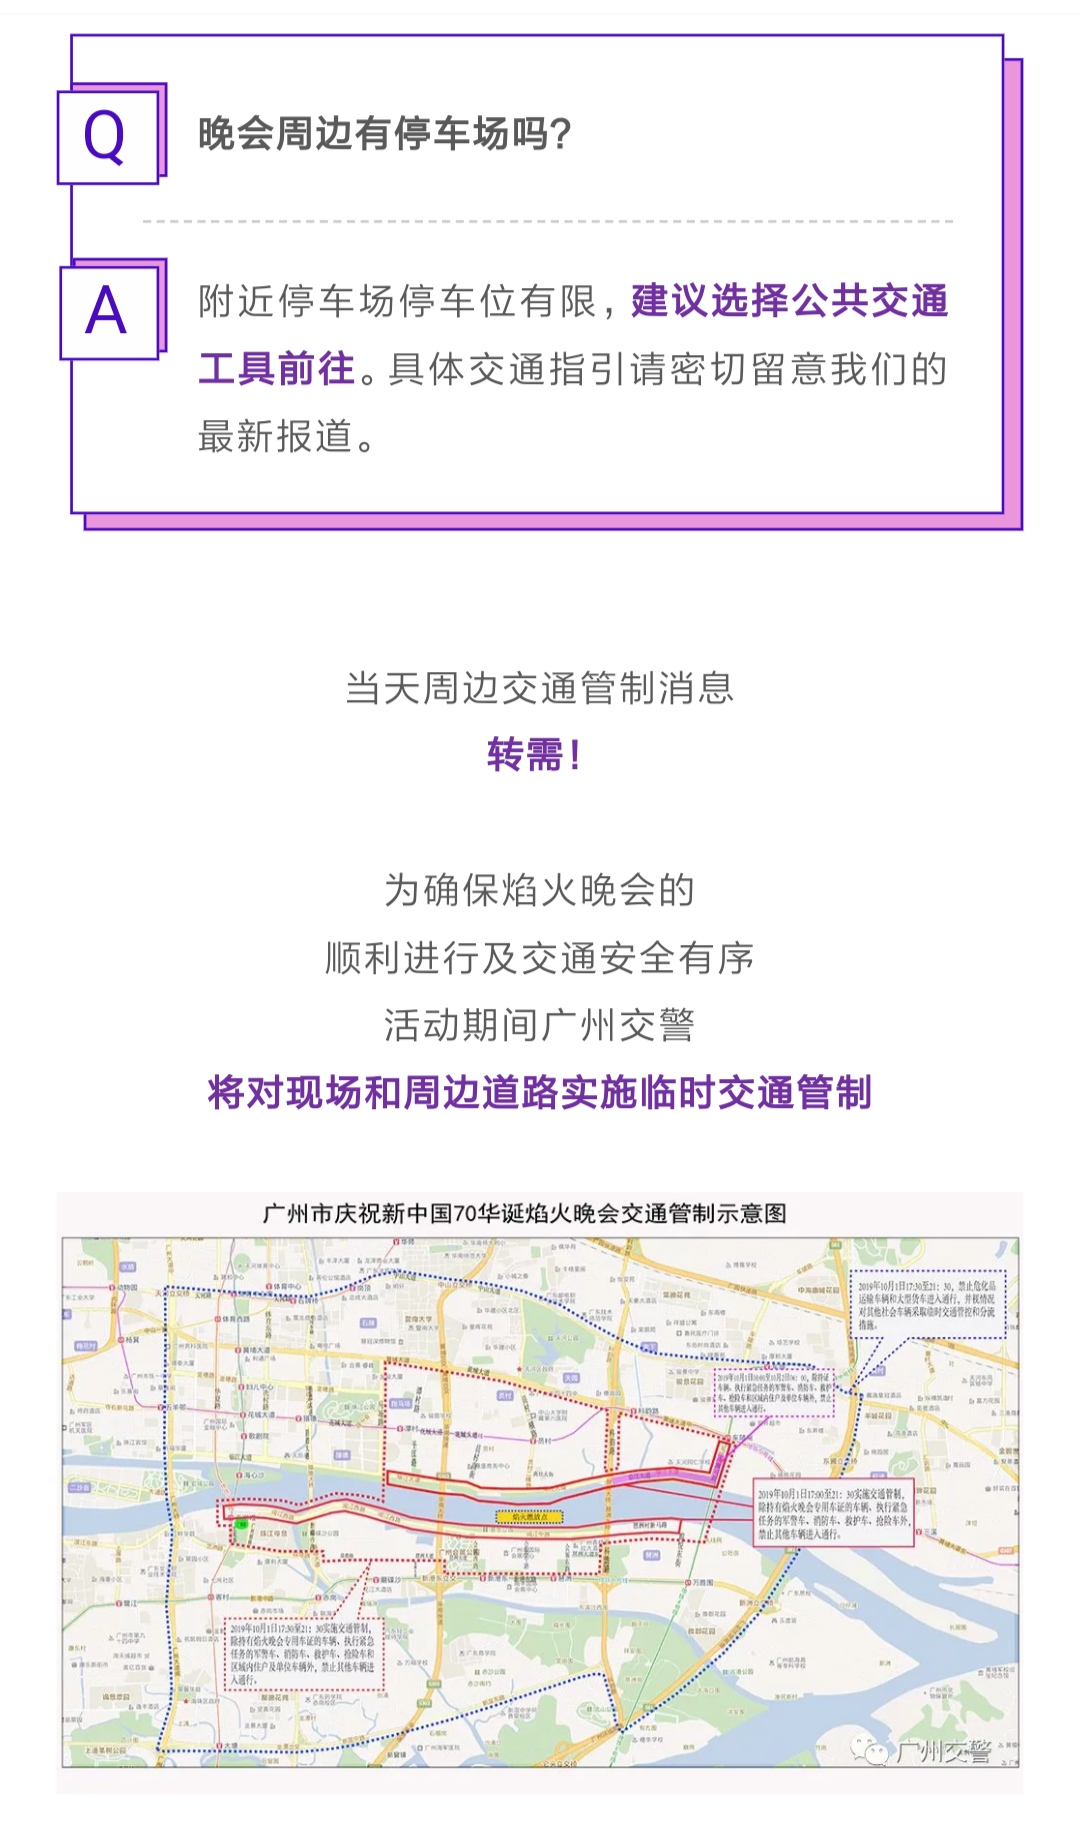 2019国庆广州焰火晚会交通出行指引大全图1: